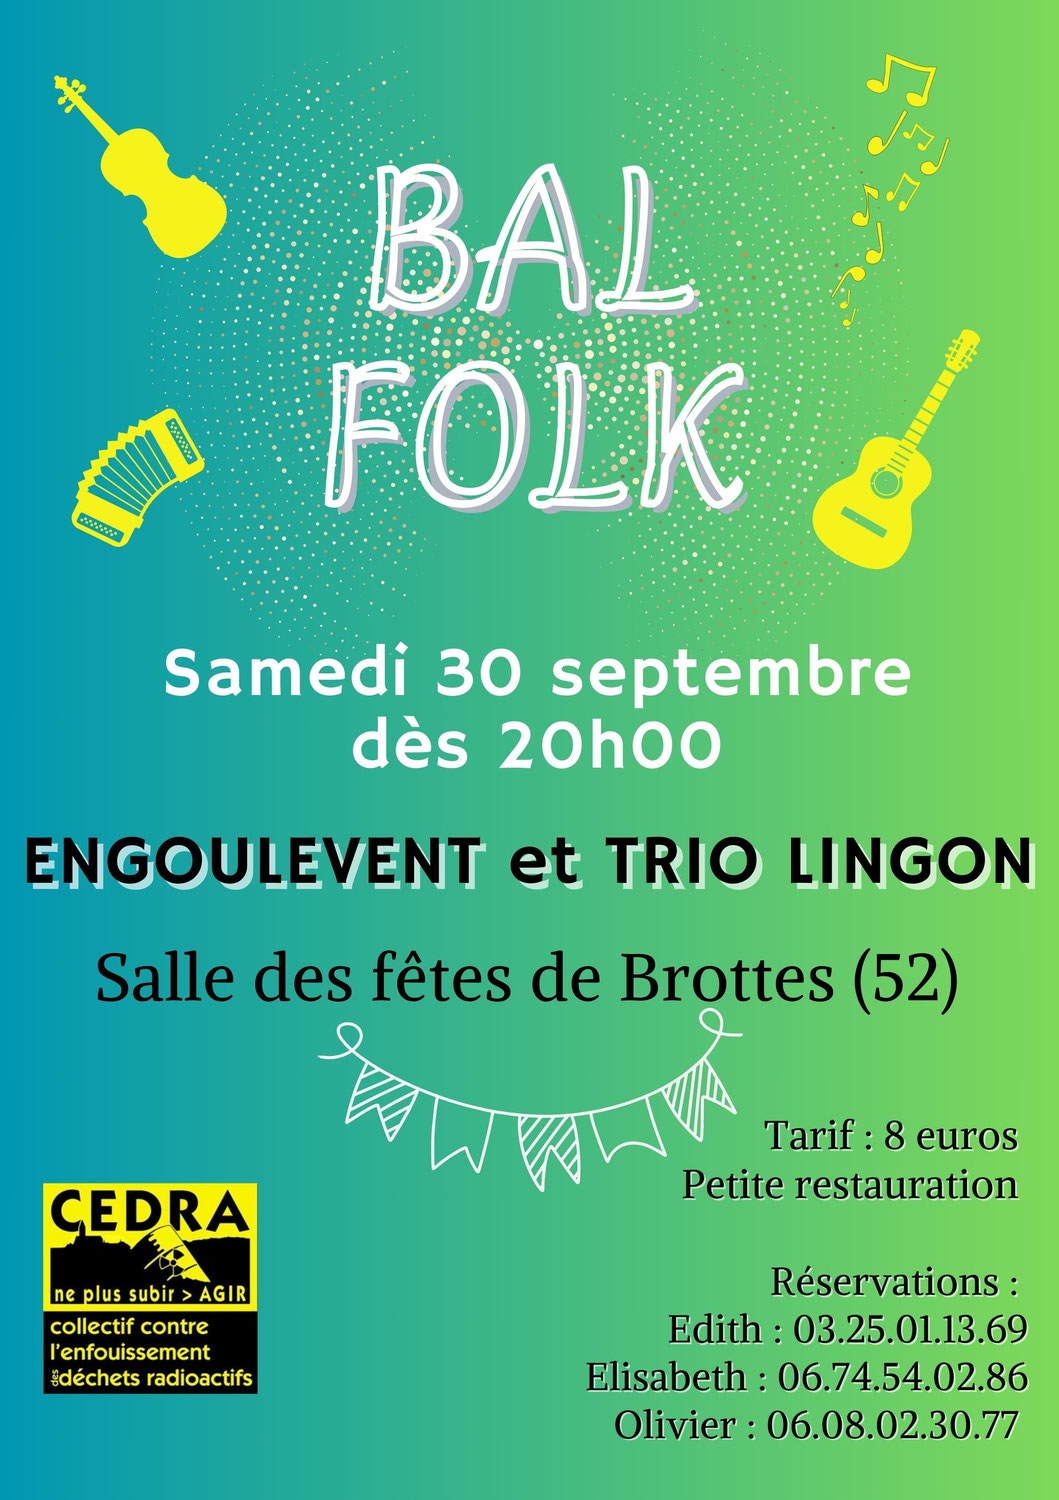 N'oubliez pas le bal folk du Cedra  : samedi 30 septembre, salle des fêtes de Brottes (52)